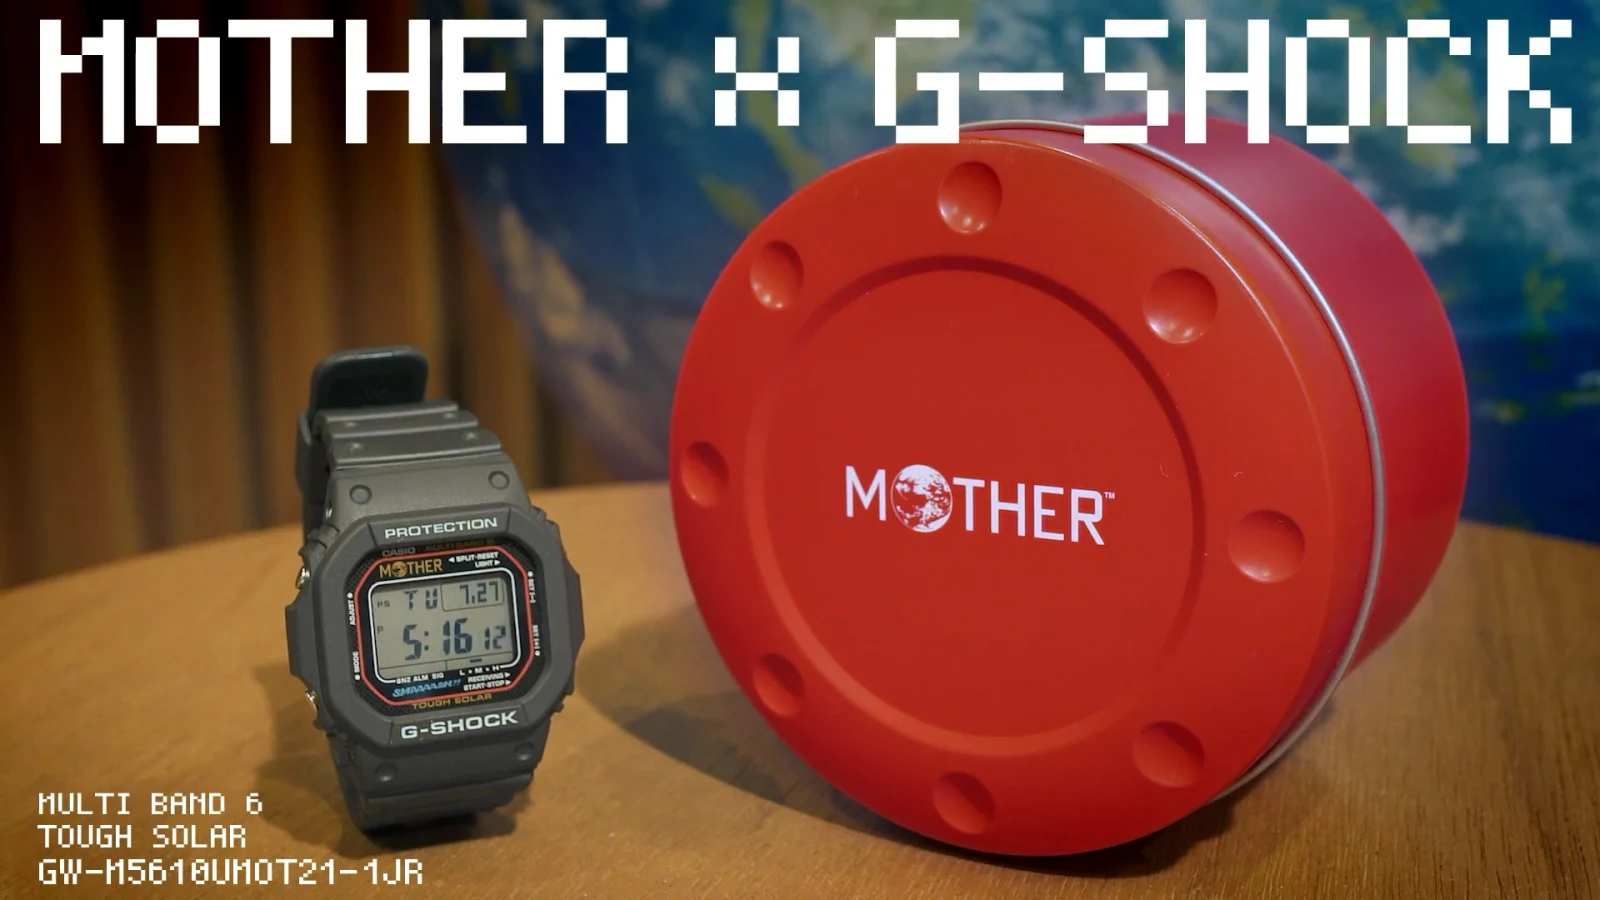 Mother × G-Shock 联名手表推出